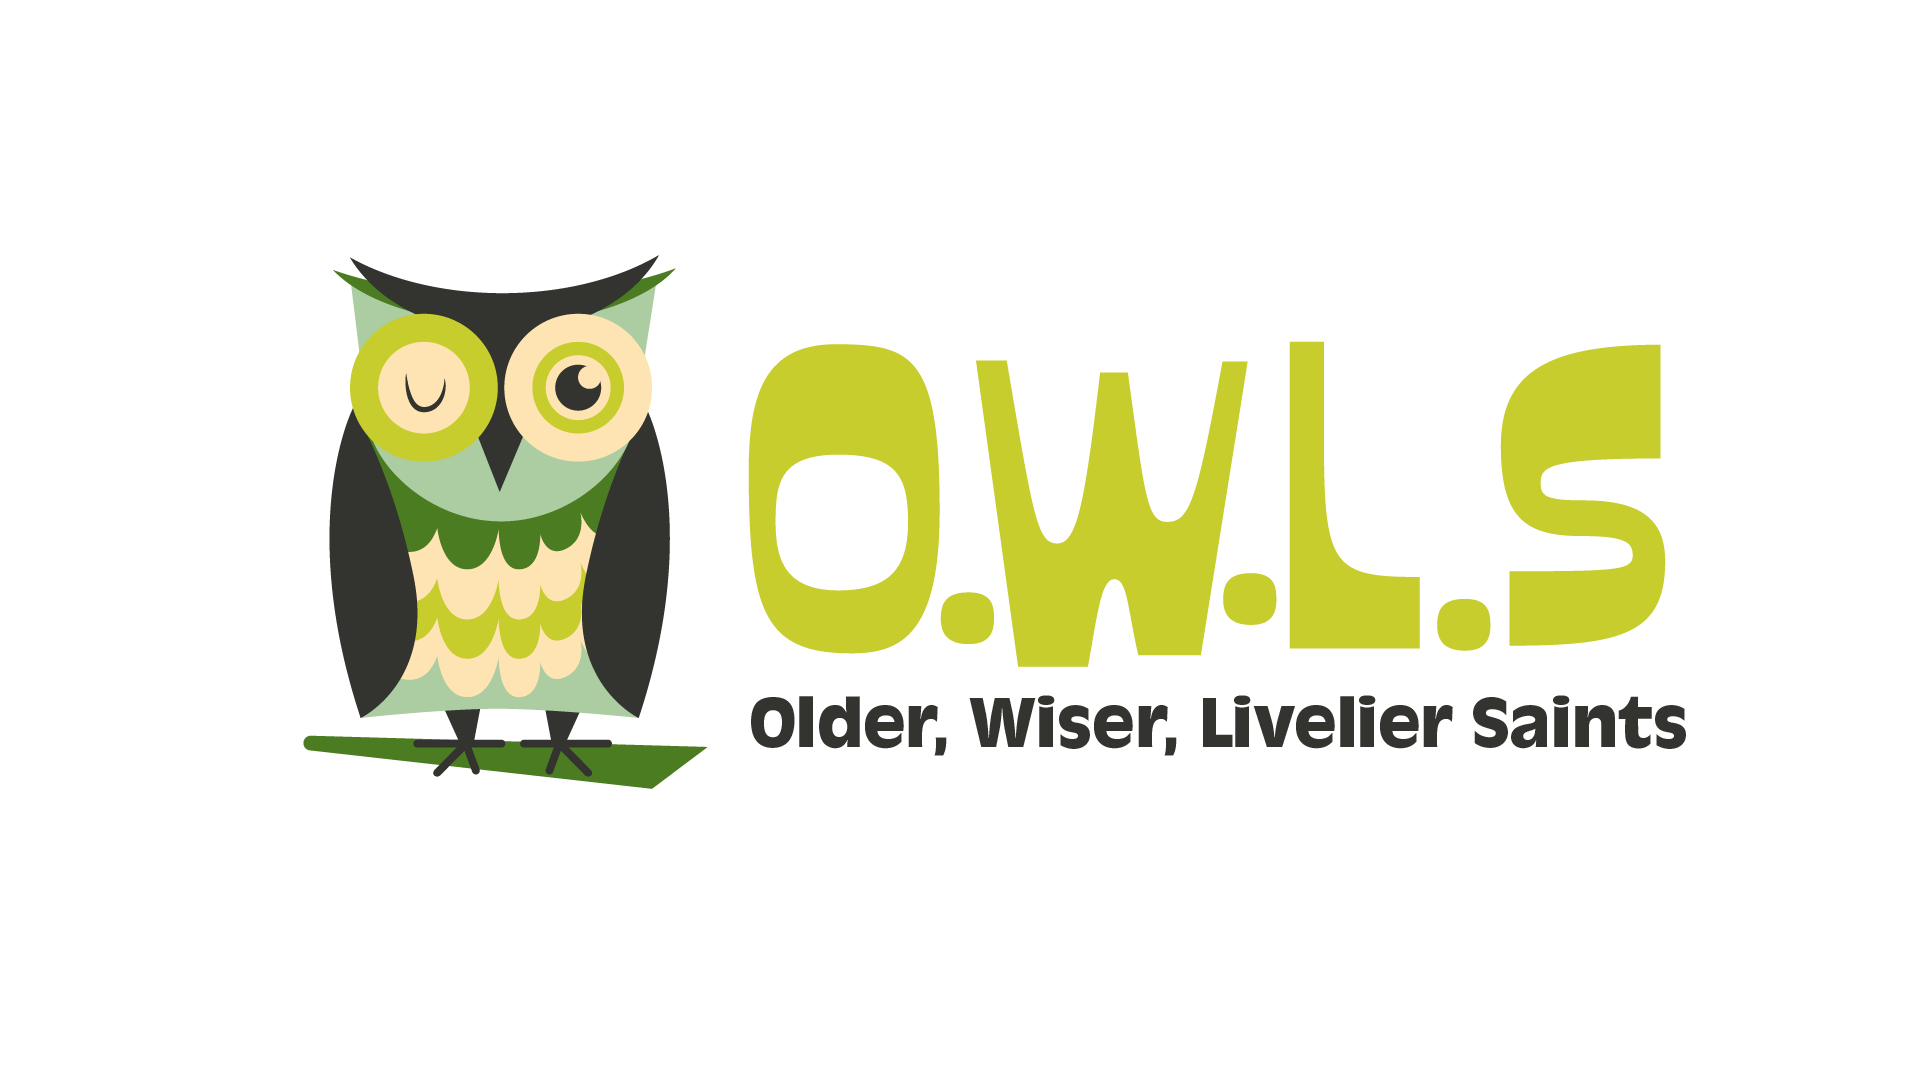 OWLs 50+ (Jan. 28 gathering)